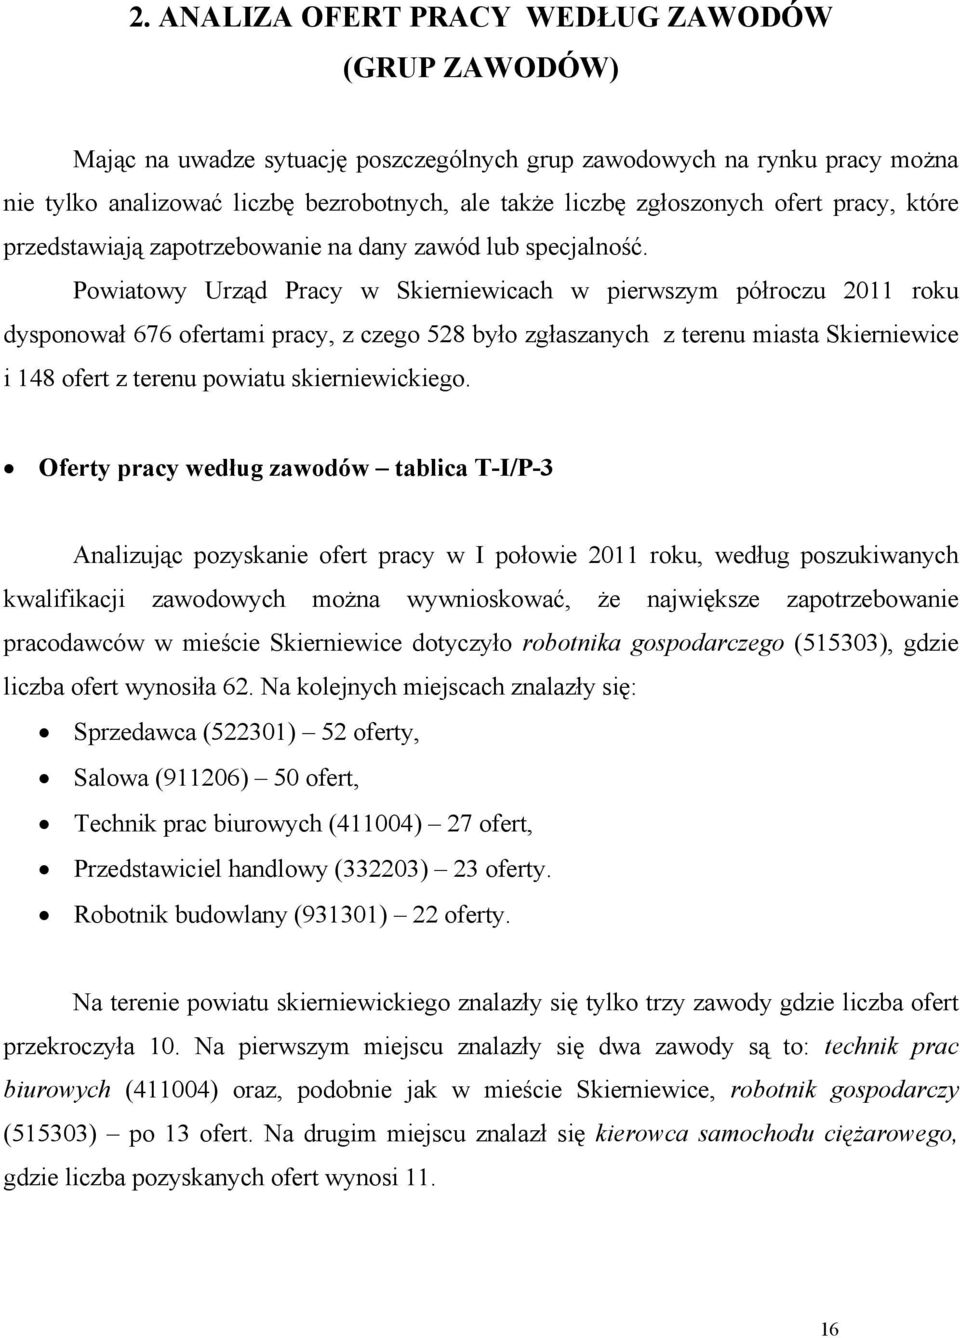 Powiatowy Urząd Pracy w Skierniewicach w pierwszym półroczu 2011 roku dysponował 676 ofertami pracy, z czego 528 było zgłaszanych z terenu miasta Skierniewice i 148 ofert z terenu powiatu